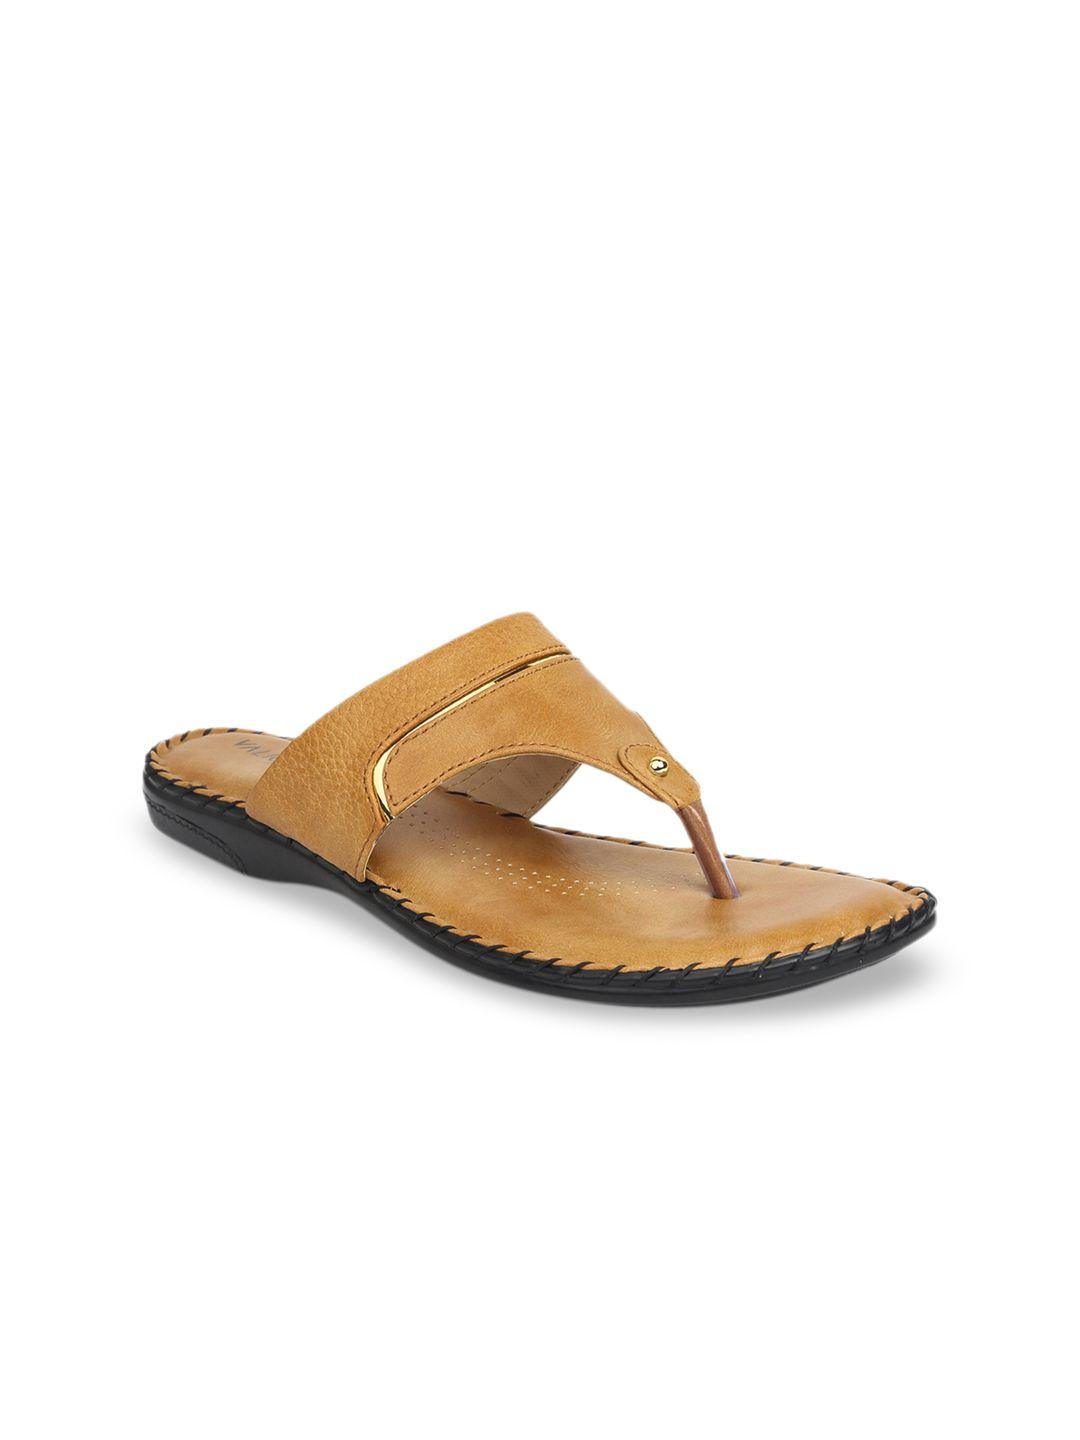 valiosaa women tan textured open toe flats